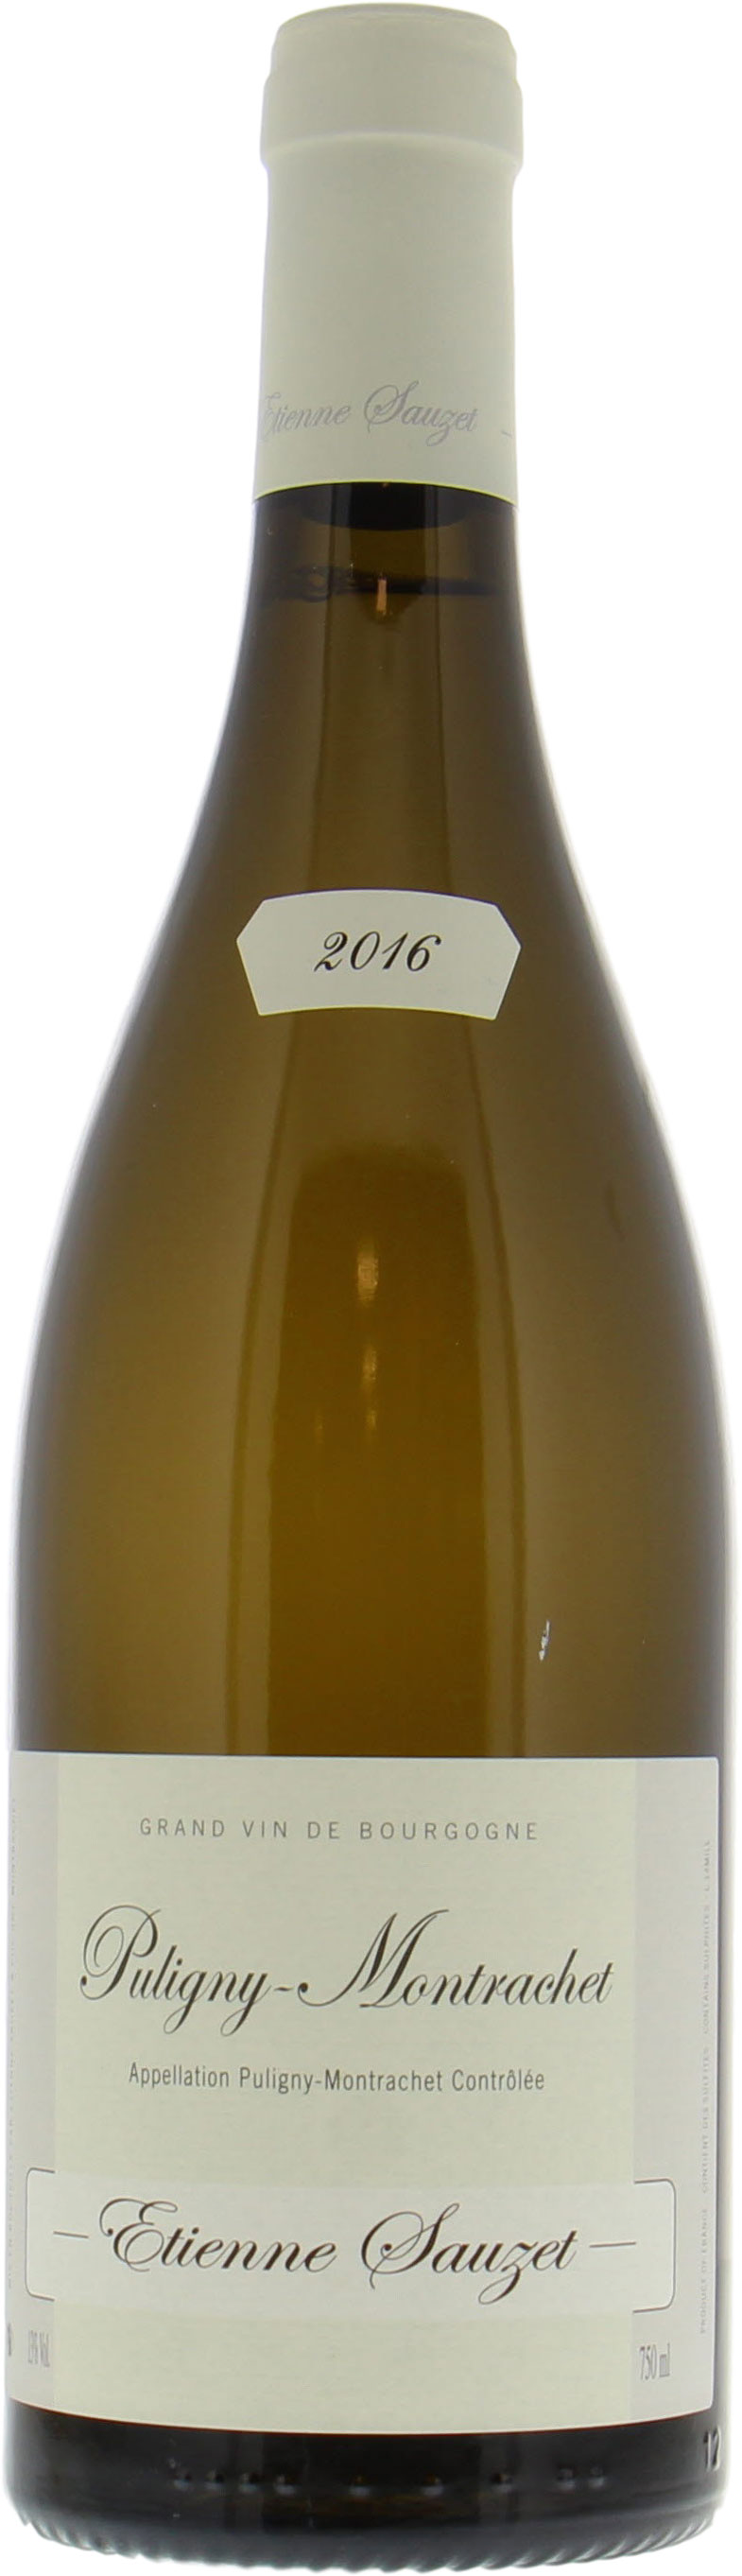 Sauzet - Puligny Montrachet 2016 perfect